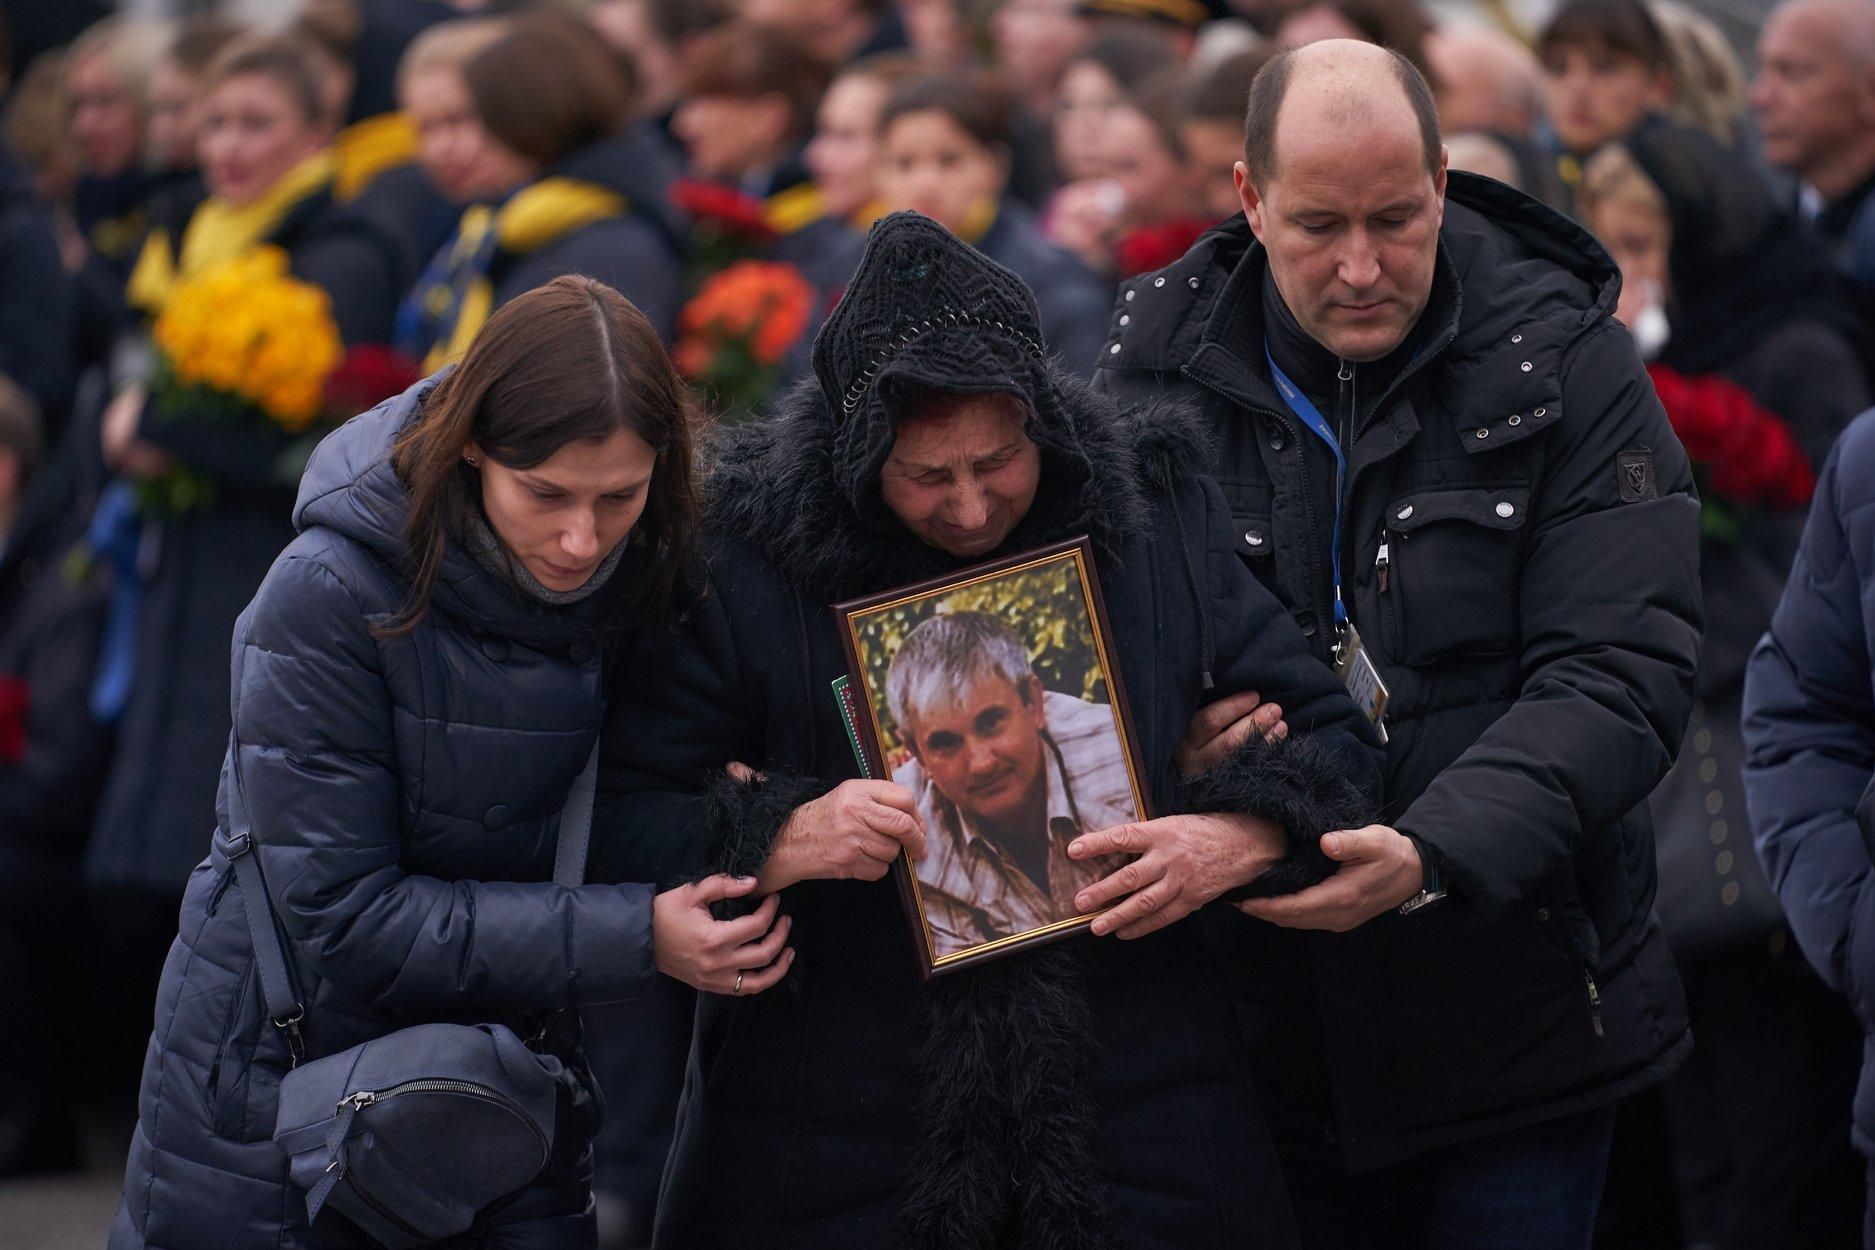 Авіакатастрофа МАУ в Ірані: більшість загиблих поховають на Київщині